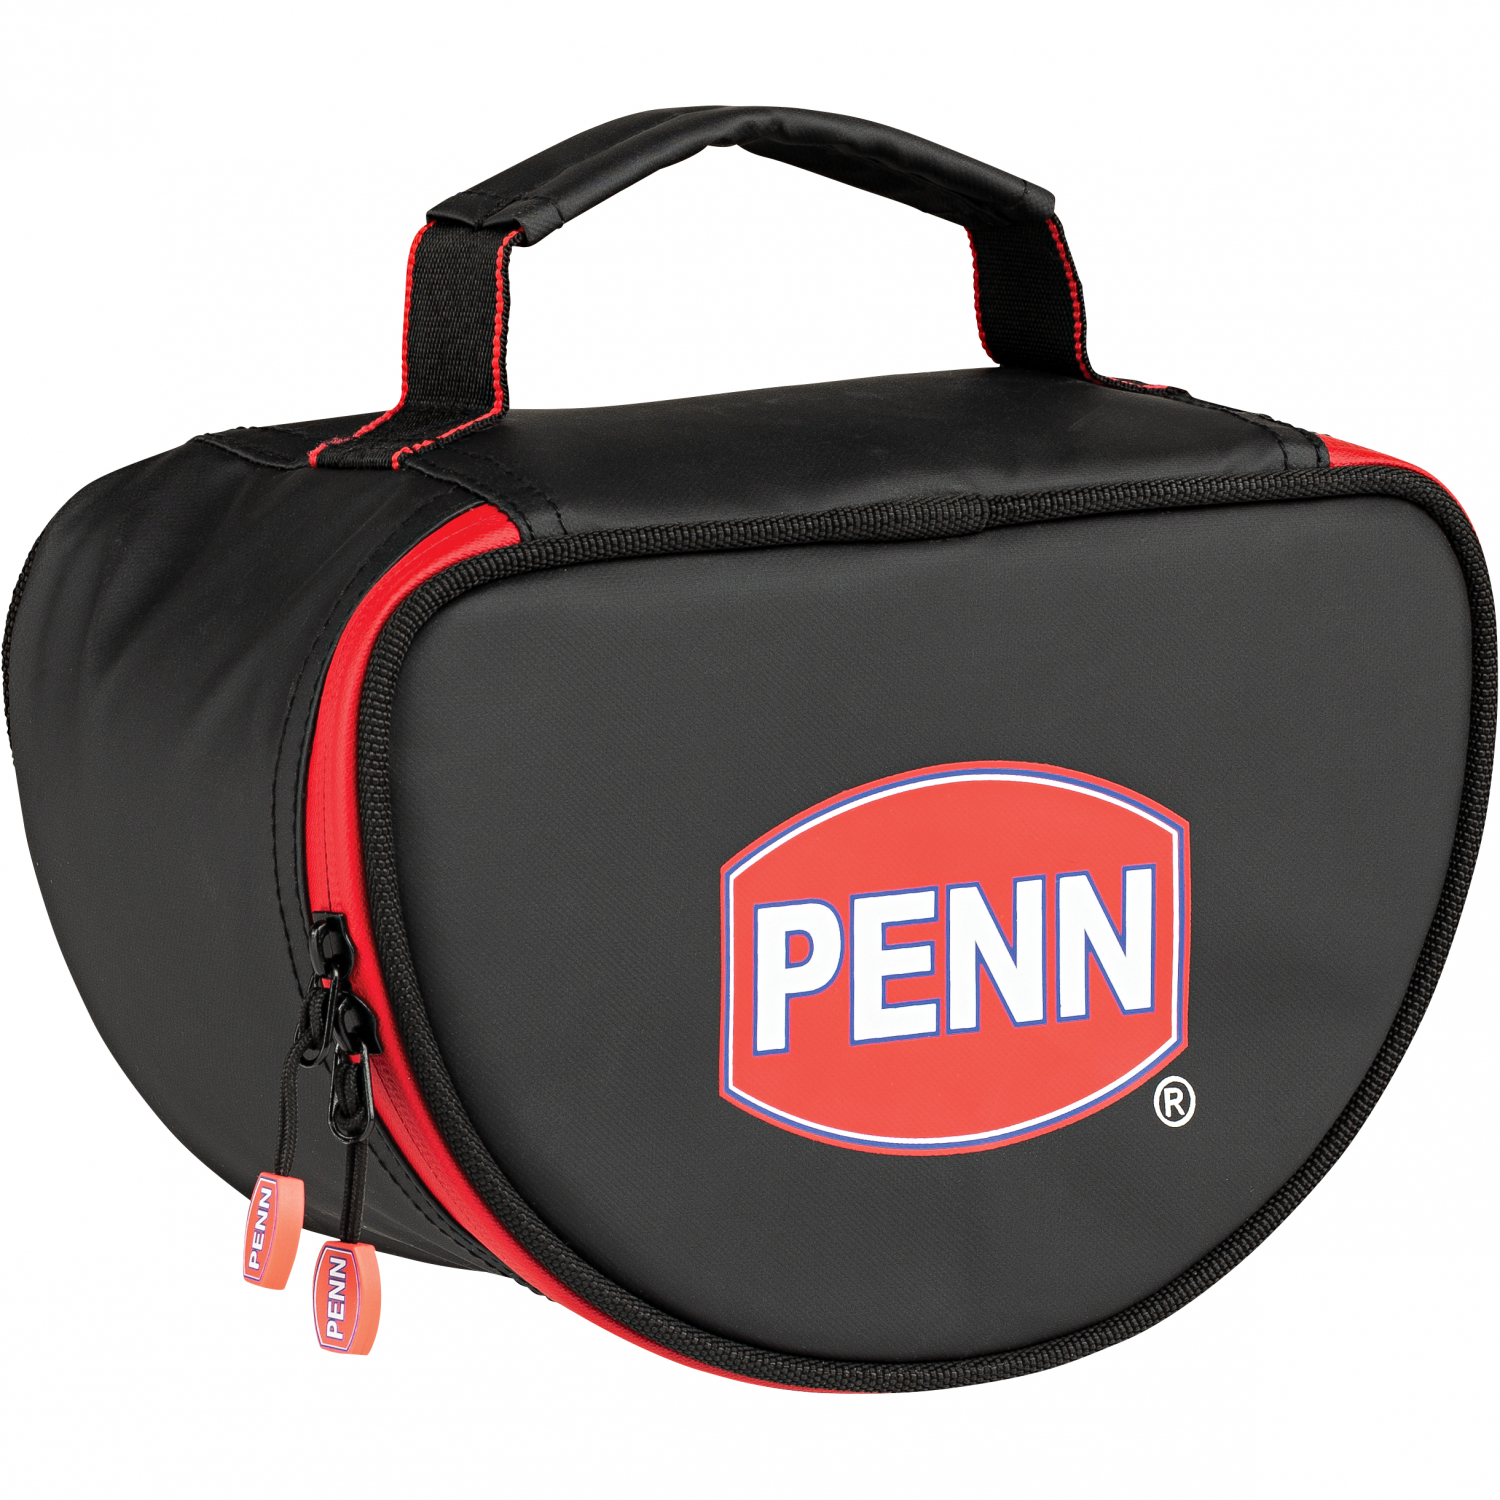 Penn Bag Reel Case at low prices